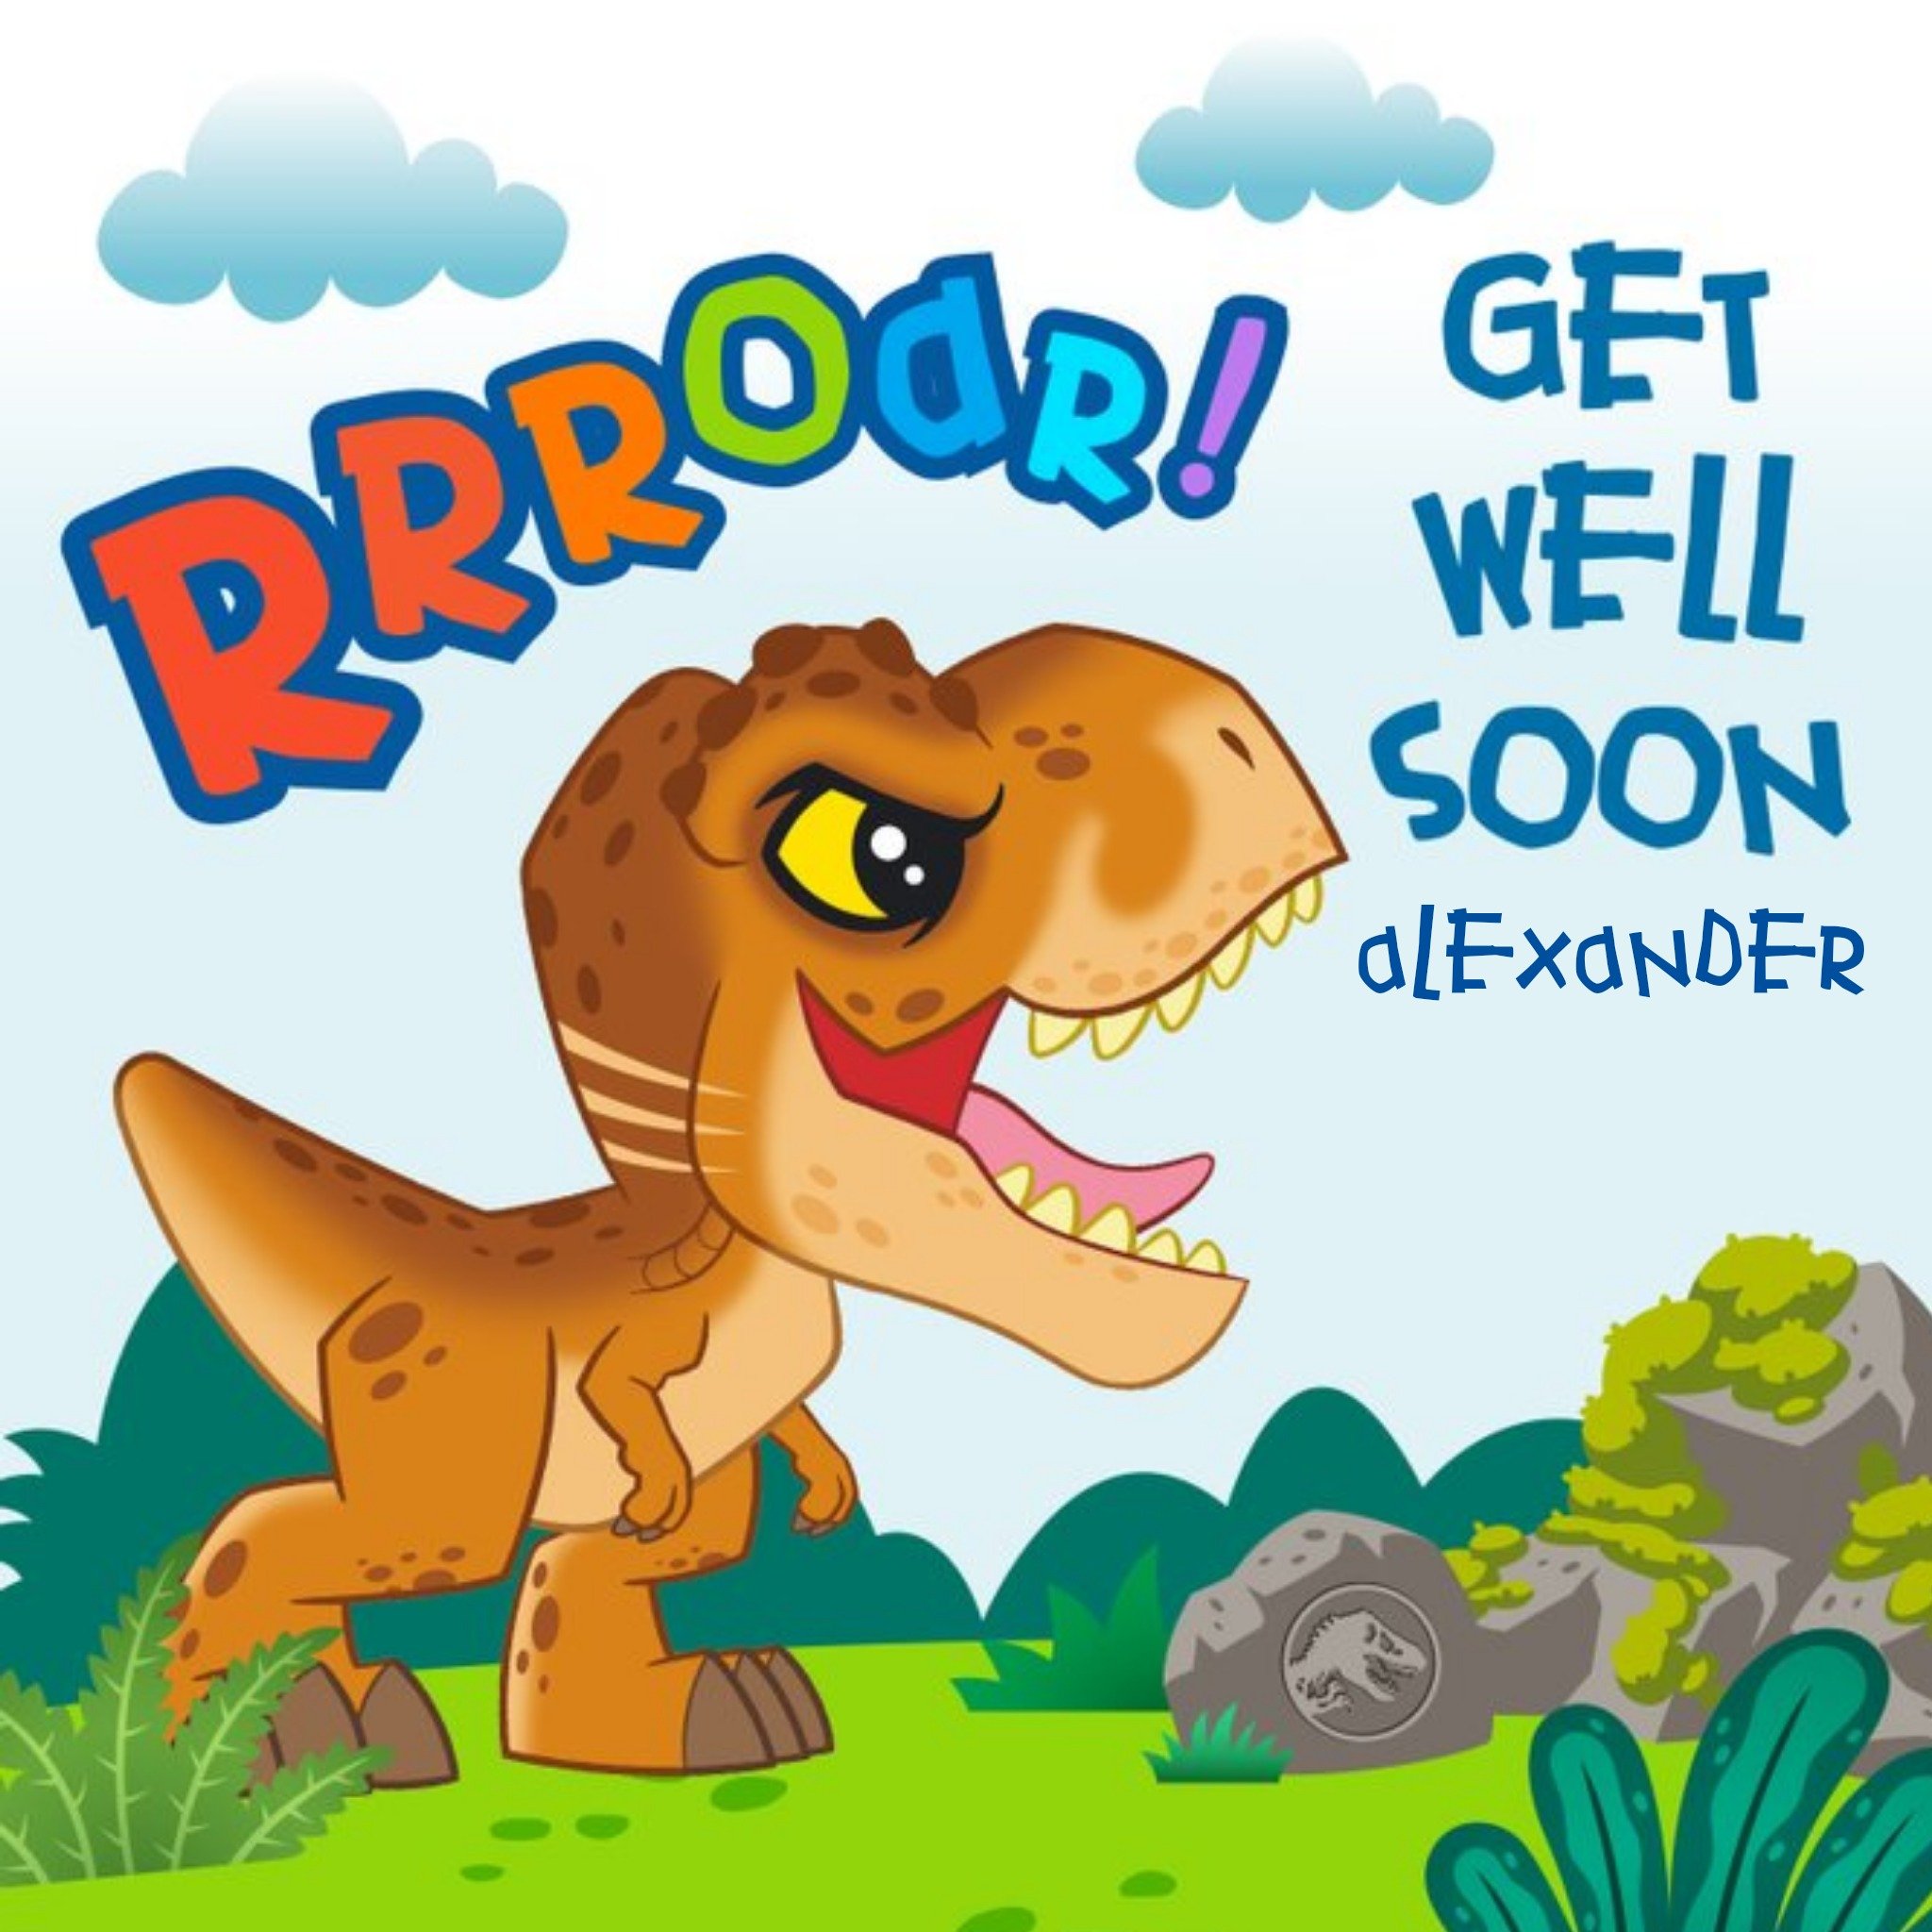 Jurassic Park Cute Cartoon T-Rex Get Well Soon Card, Square